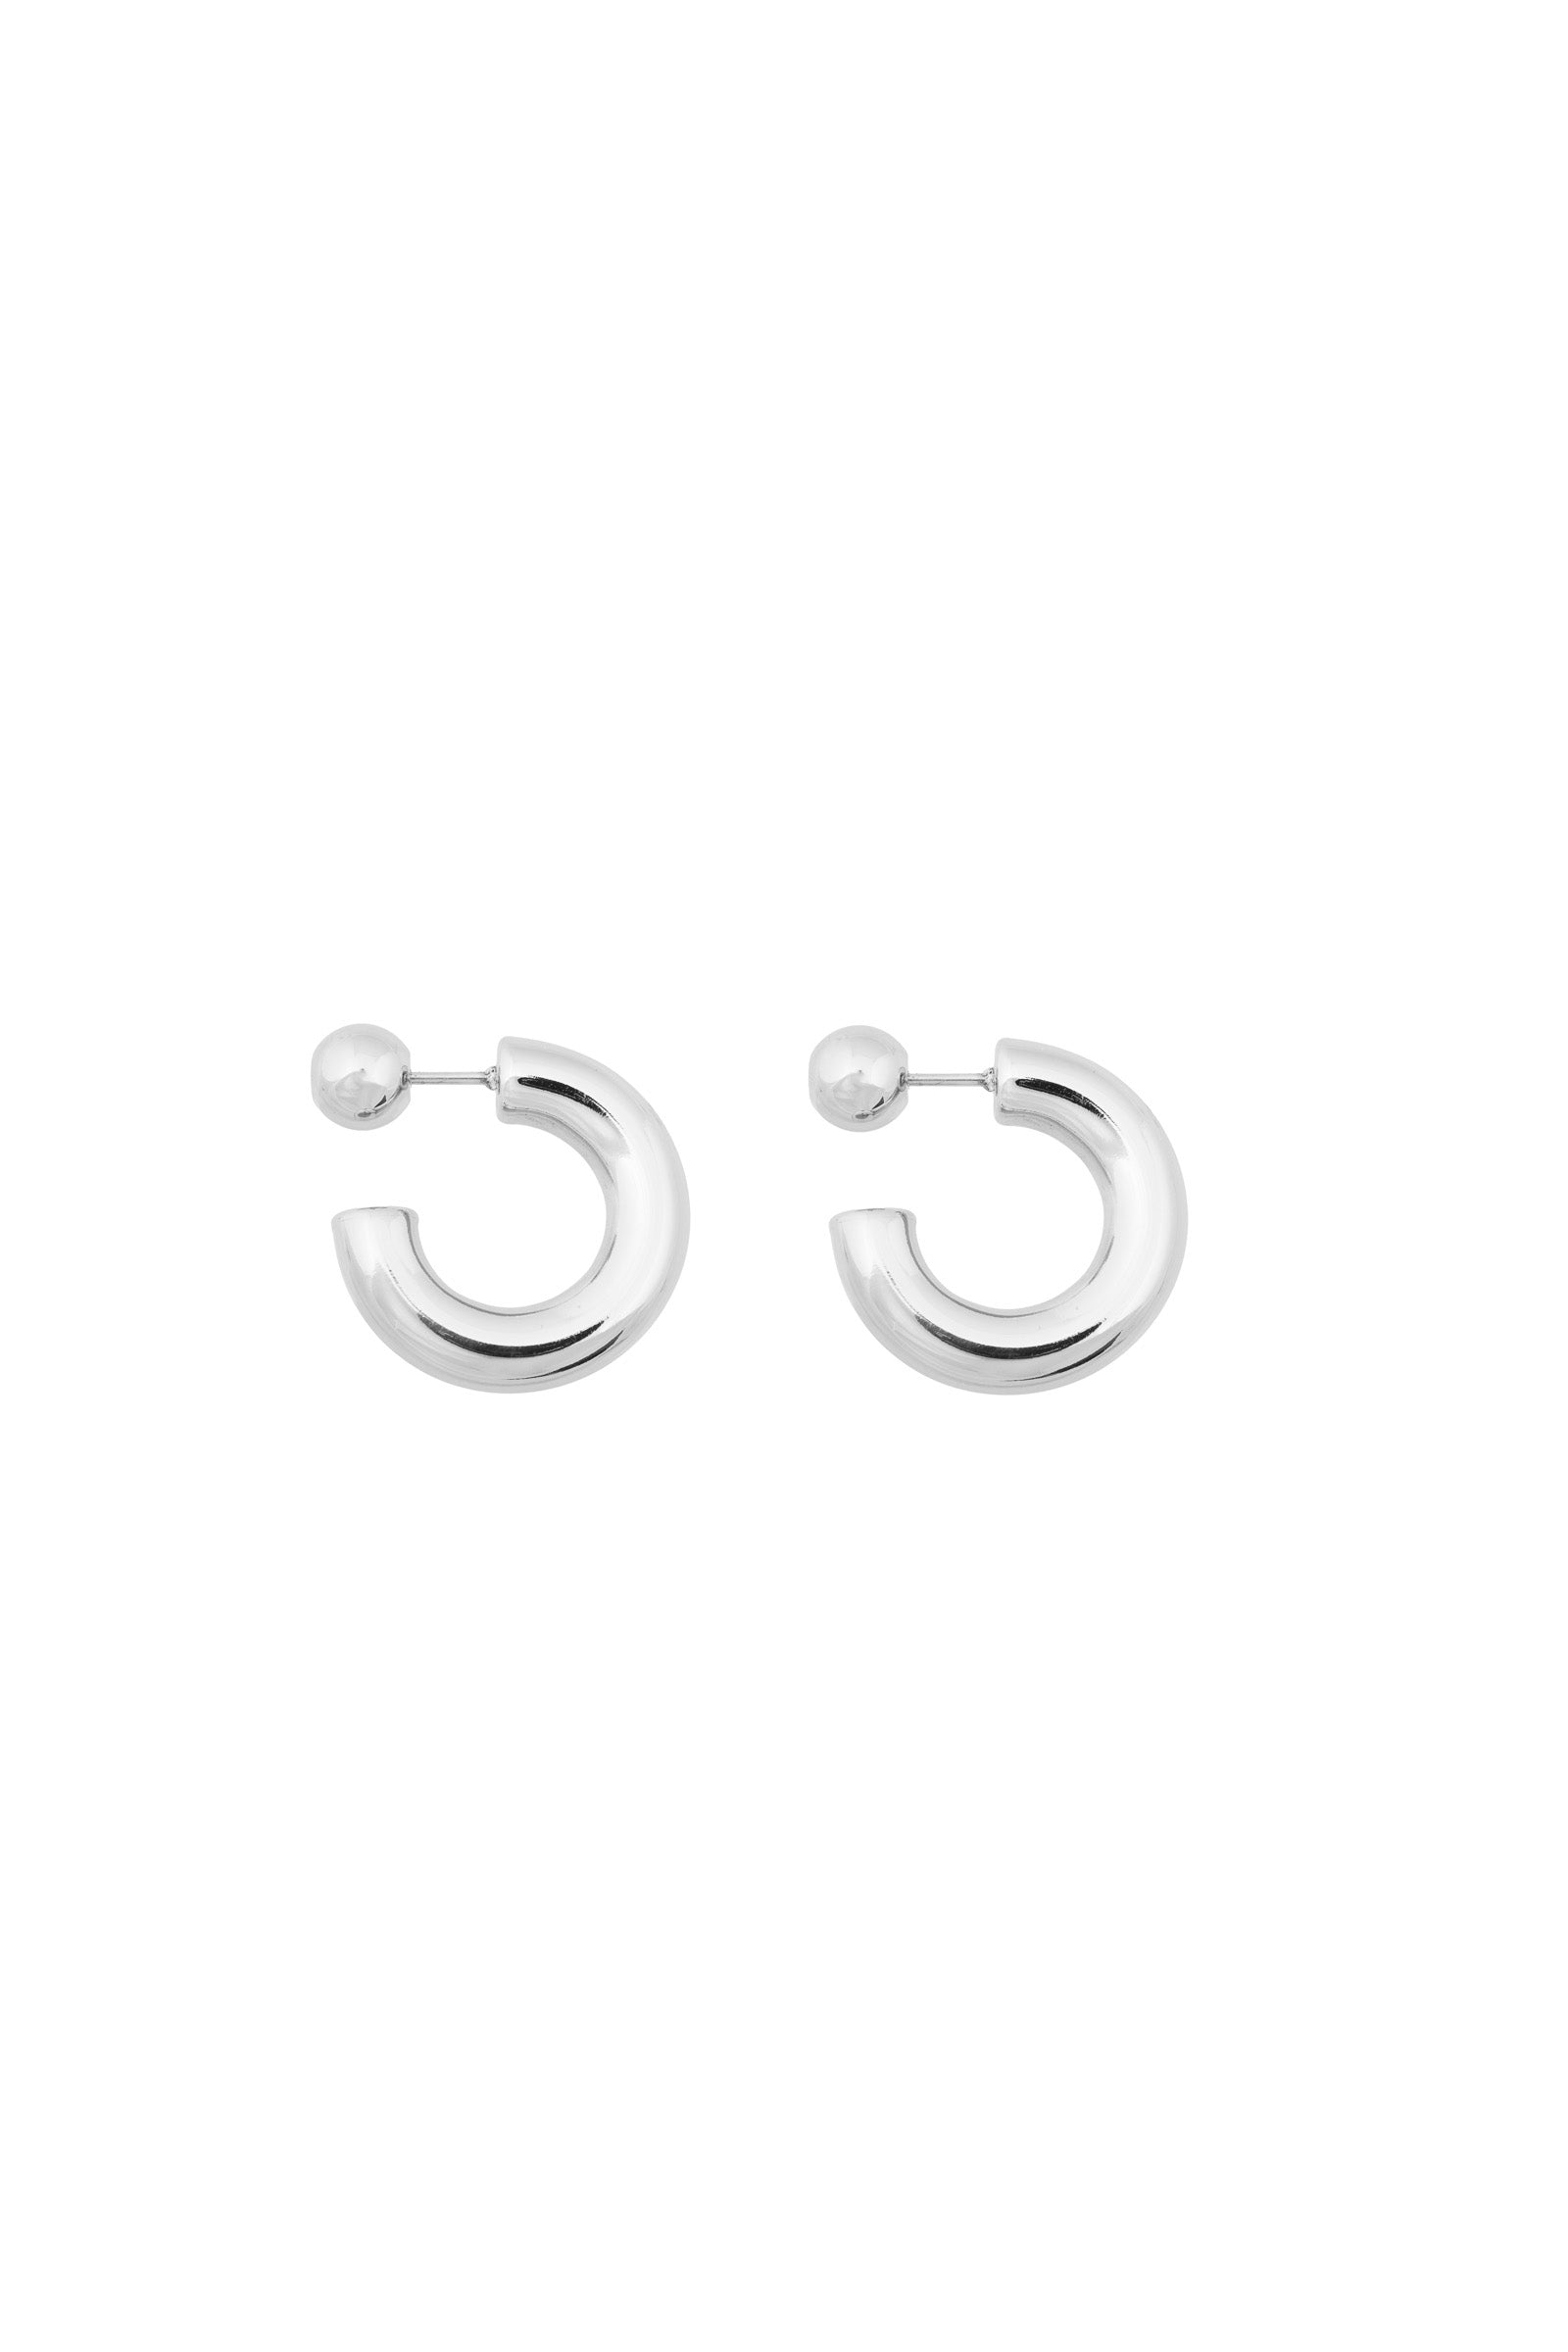 Bandhu Hoop Dot Earrings - Silver - RUM Amsterdam